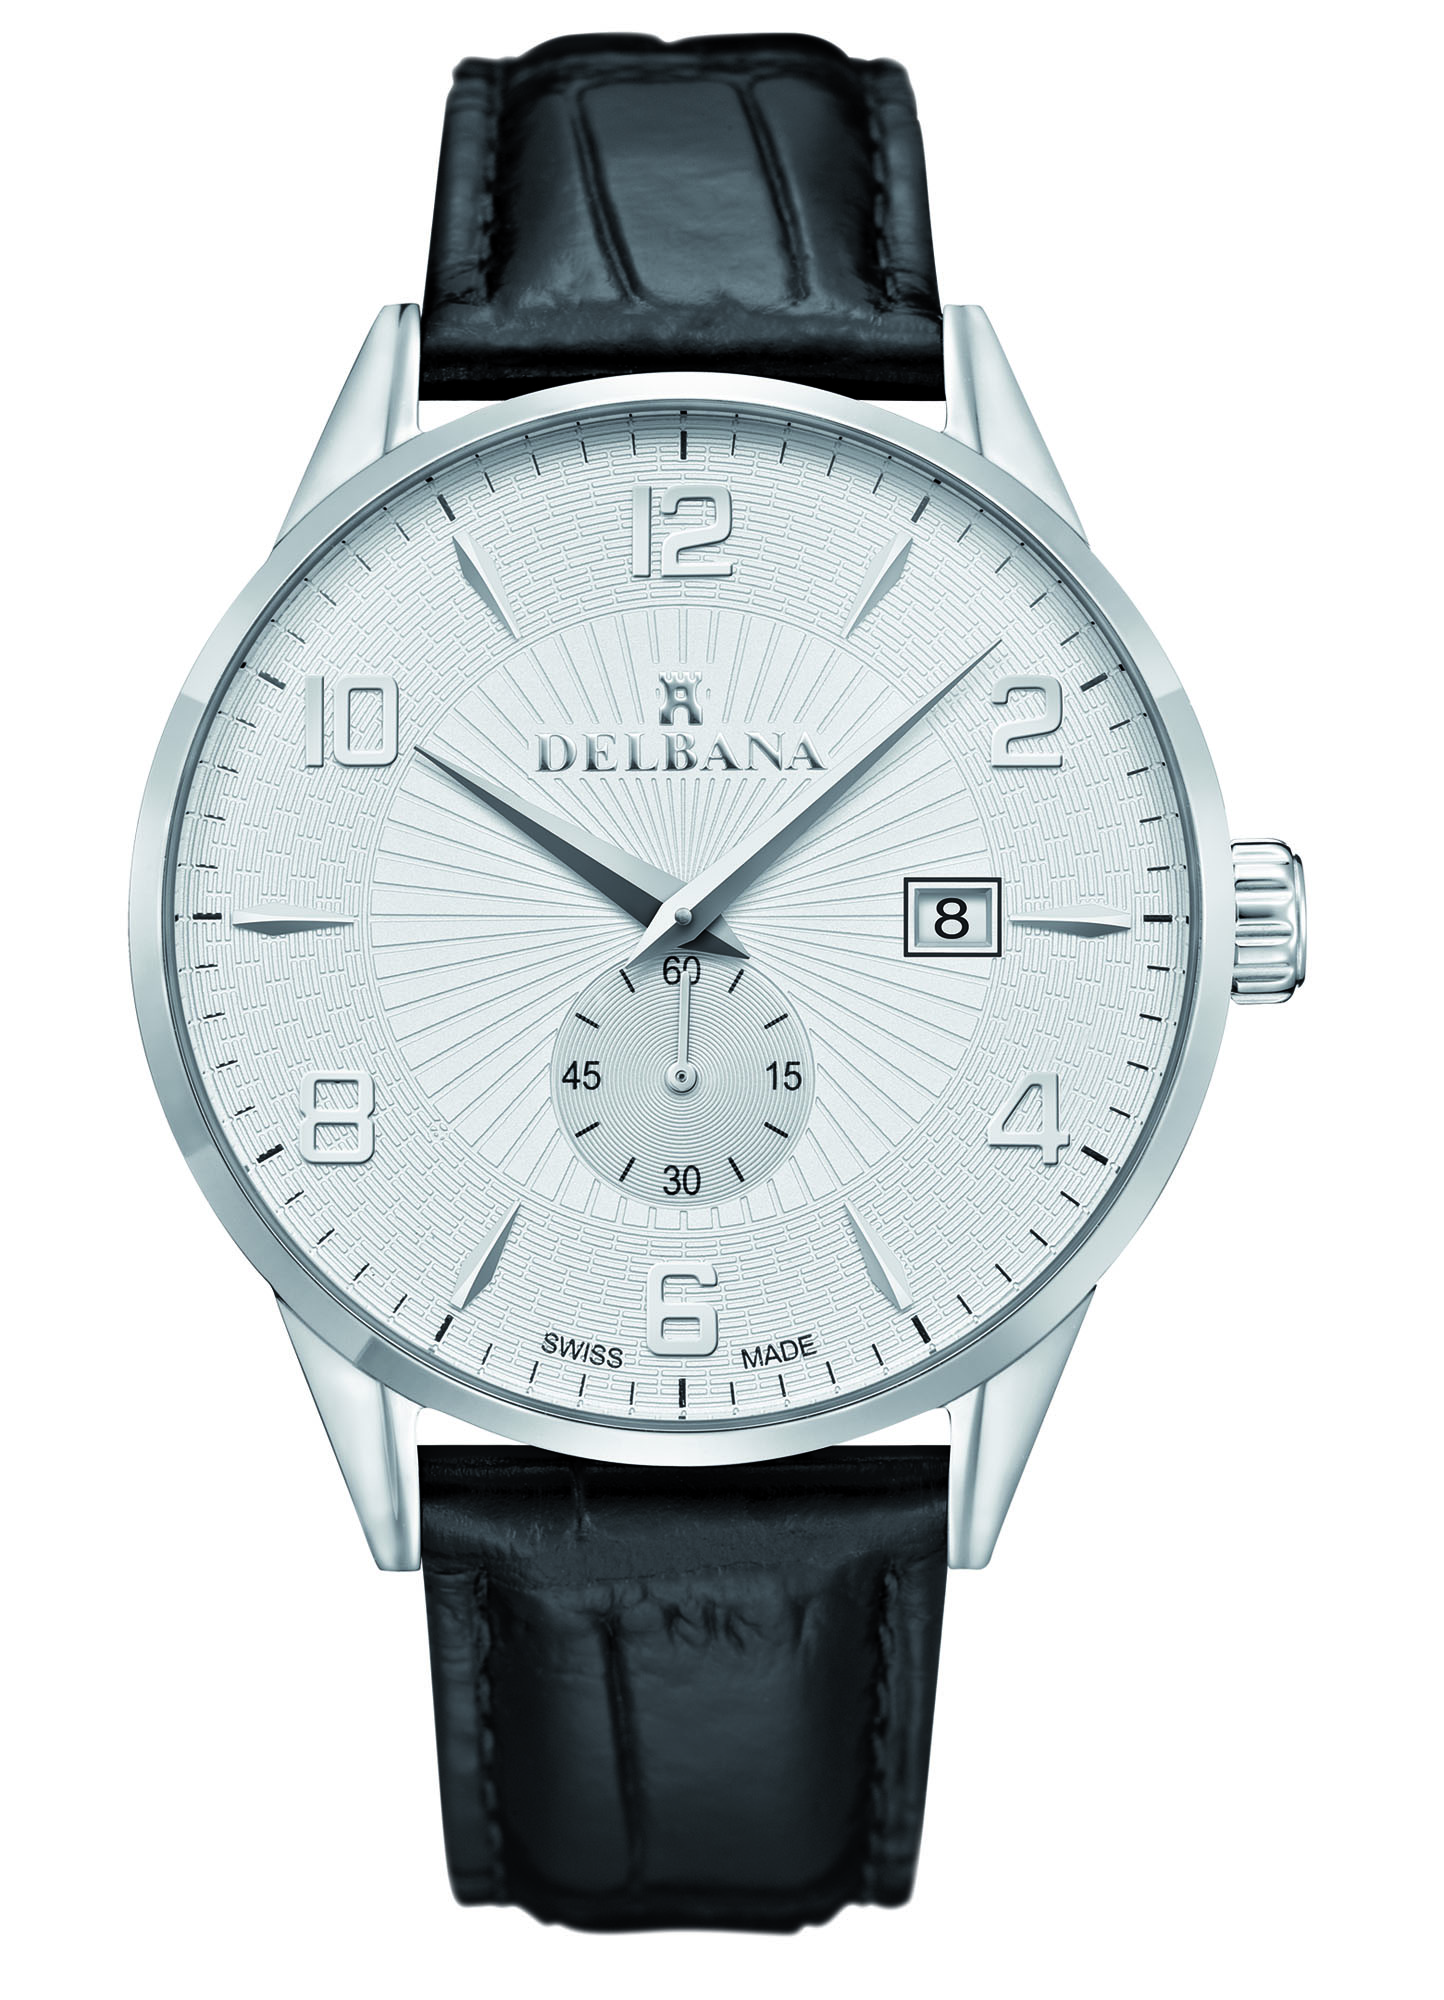 Amerika bende Alsjeblieft kijk Delbana Retro. Classic men's dress watch with date.